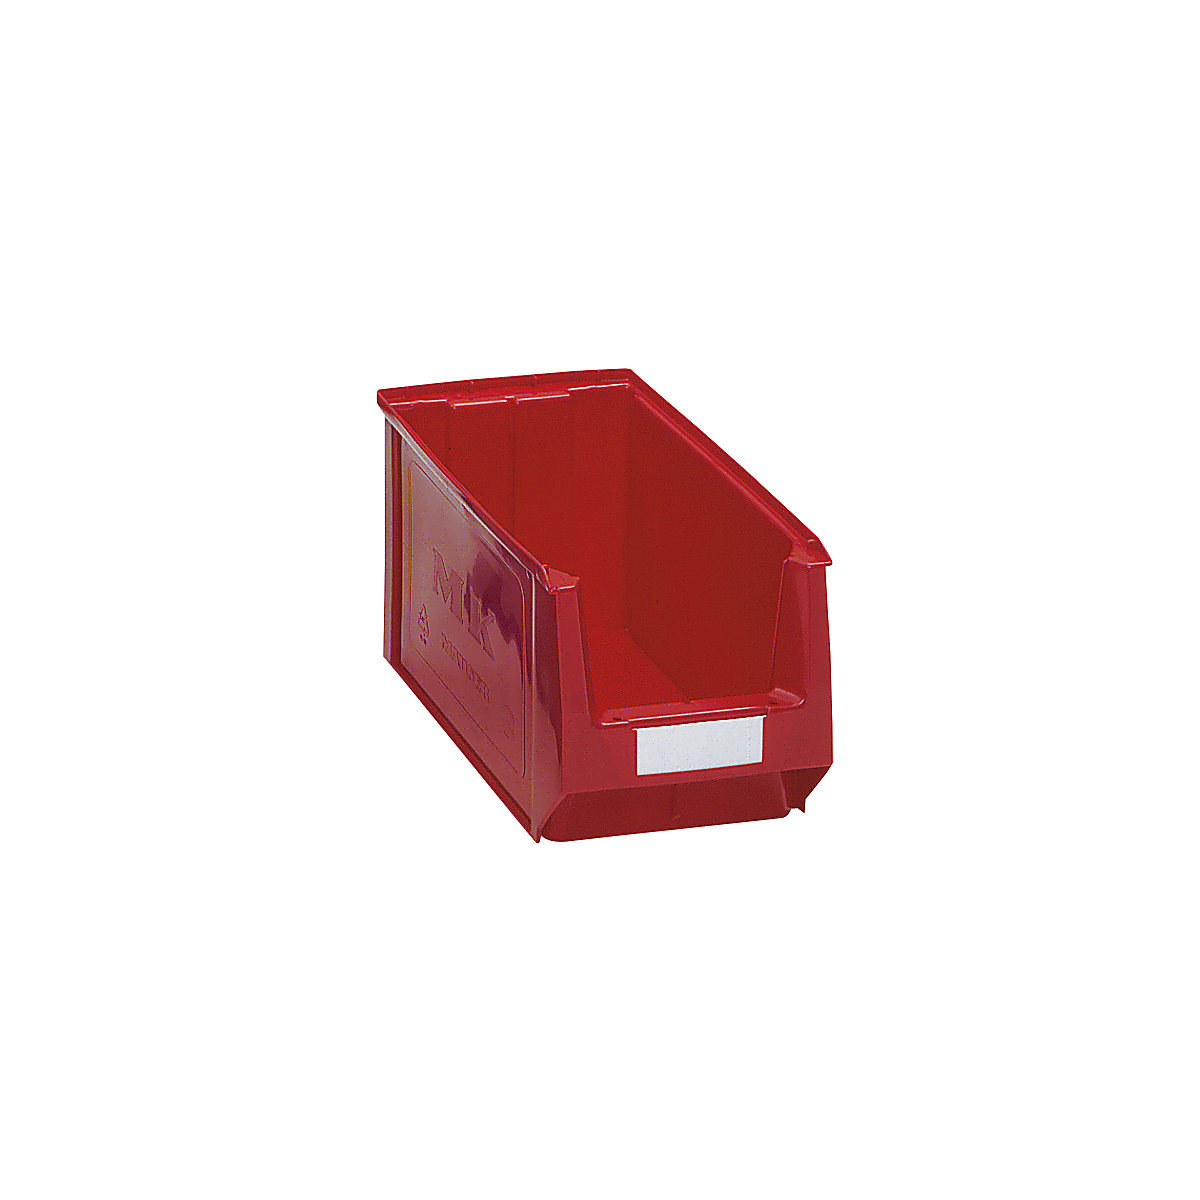 Přepravka s viditelným obsahem z polyetylénu – mauser, d x š x v 350 x 210 x 200 mm, červená, bal.j. 10 ks-8